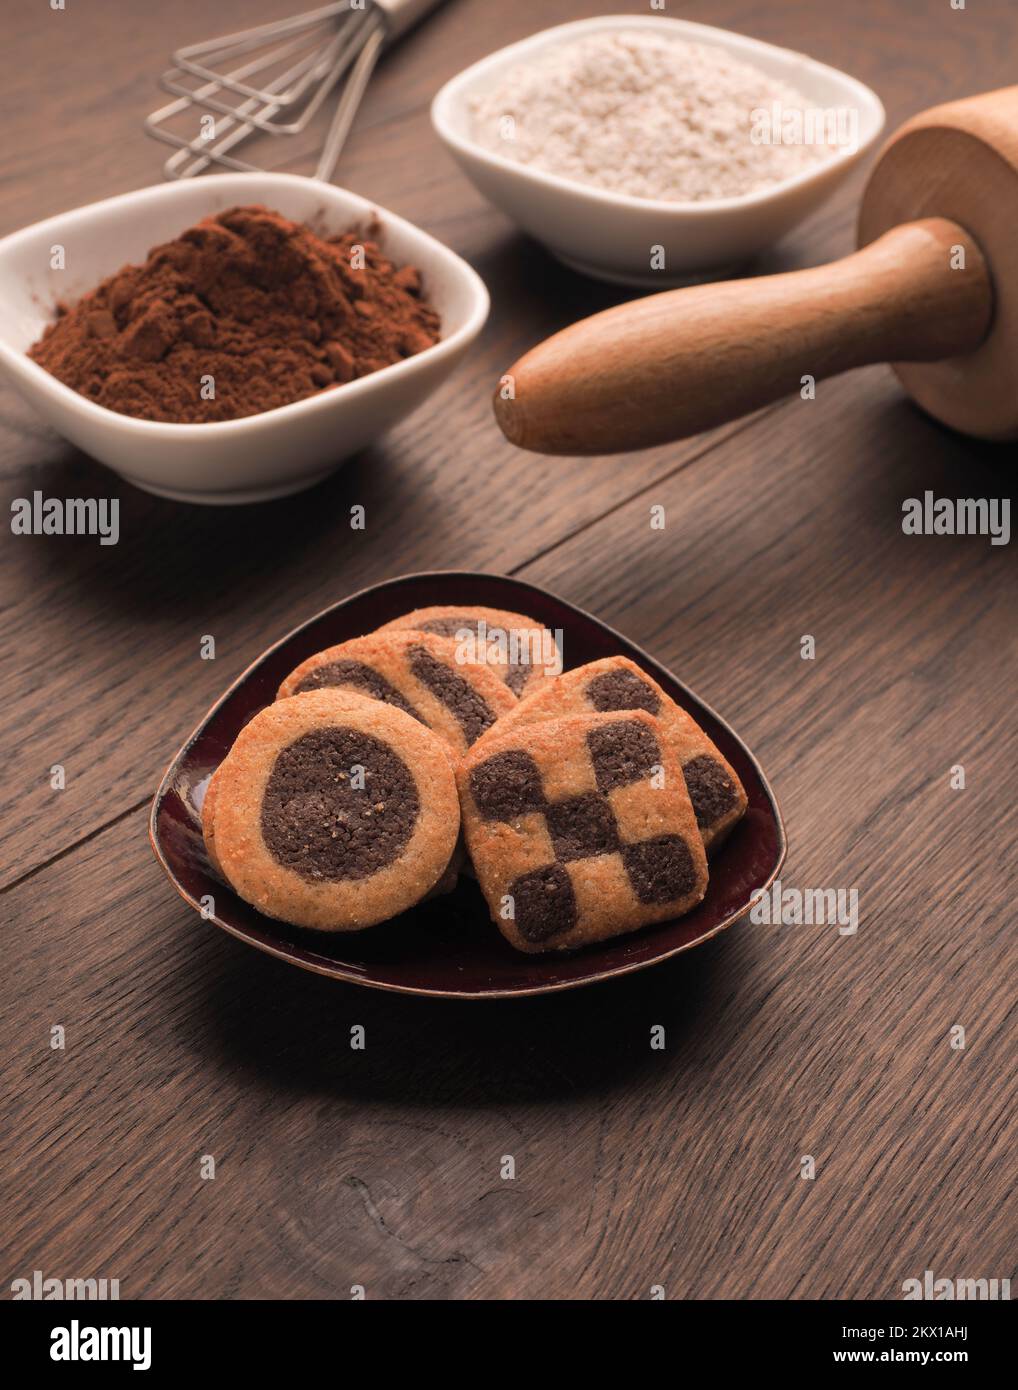 Biscuits noirs et blancs sur une table de cuisine en bois avec des ustensiles de cuisine Banque D'Images